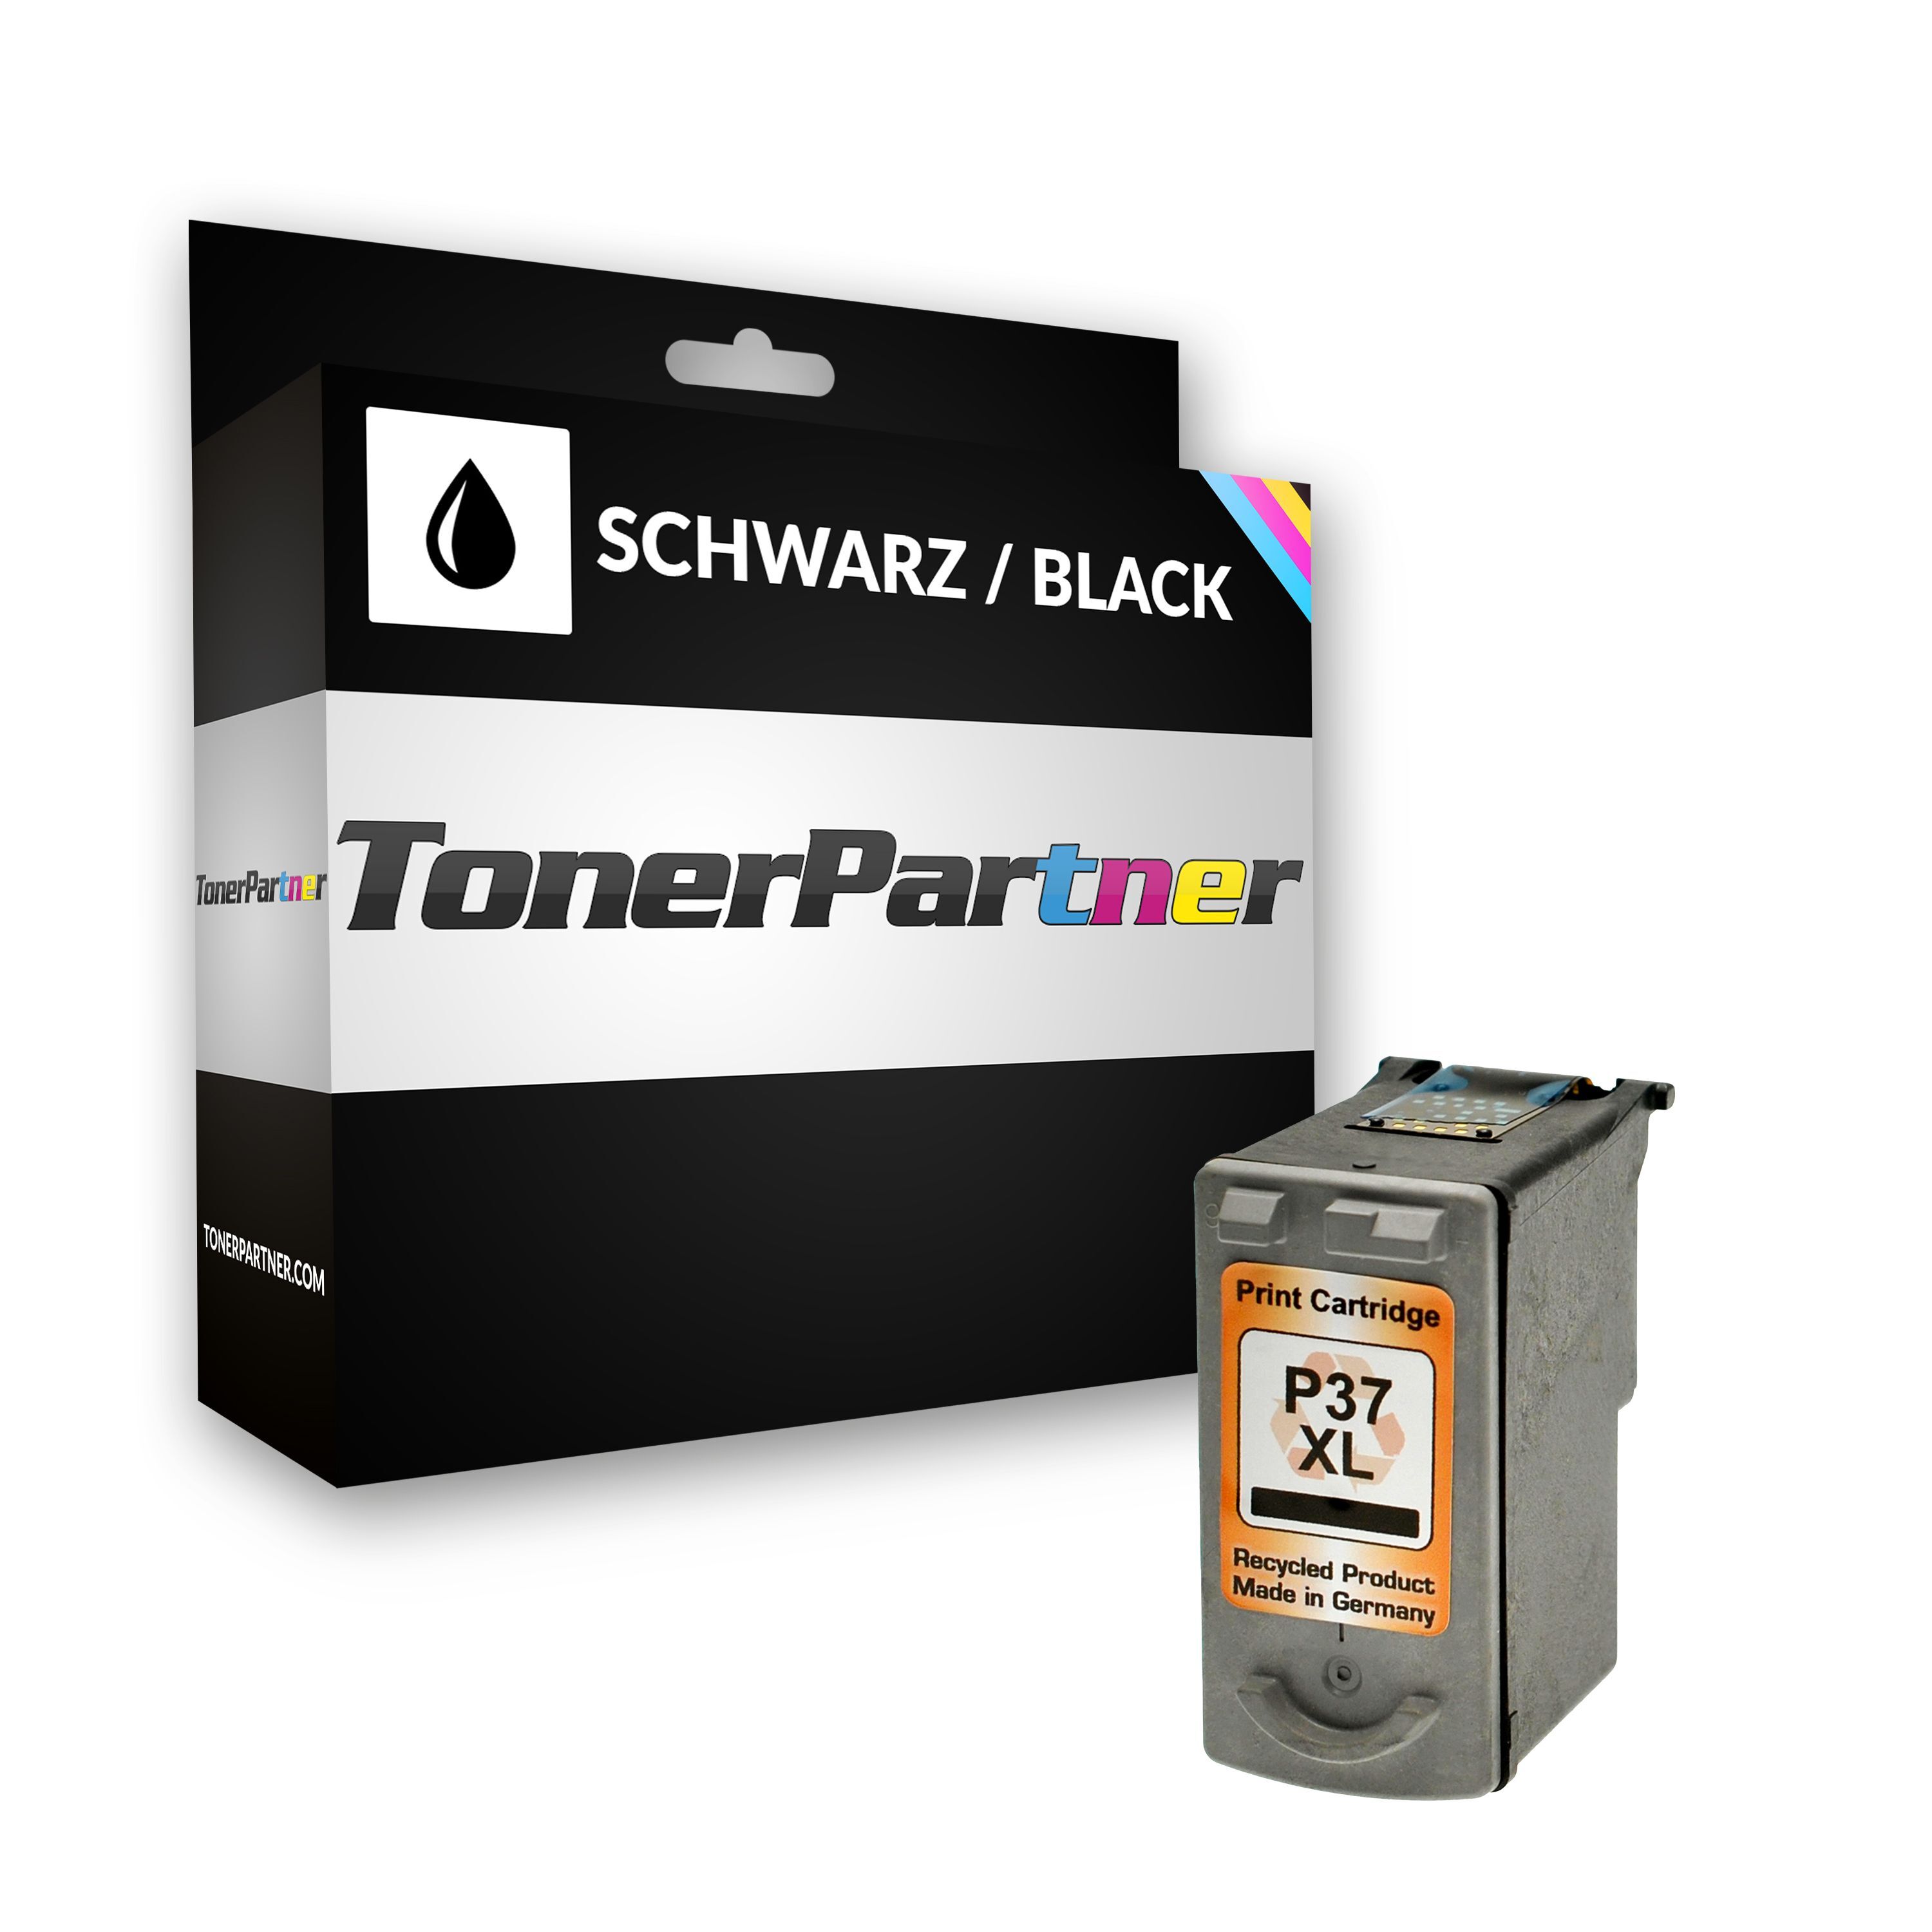 TonerPartner Compatible avec Canon Pixma IP 1800 cartouche d'encre (PG-37 / 2145 B 001) noir, 219 pages, 4,58 centimes par page, contenu: 9 ml de TonerPartner